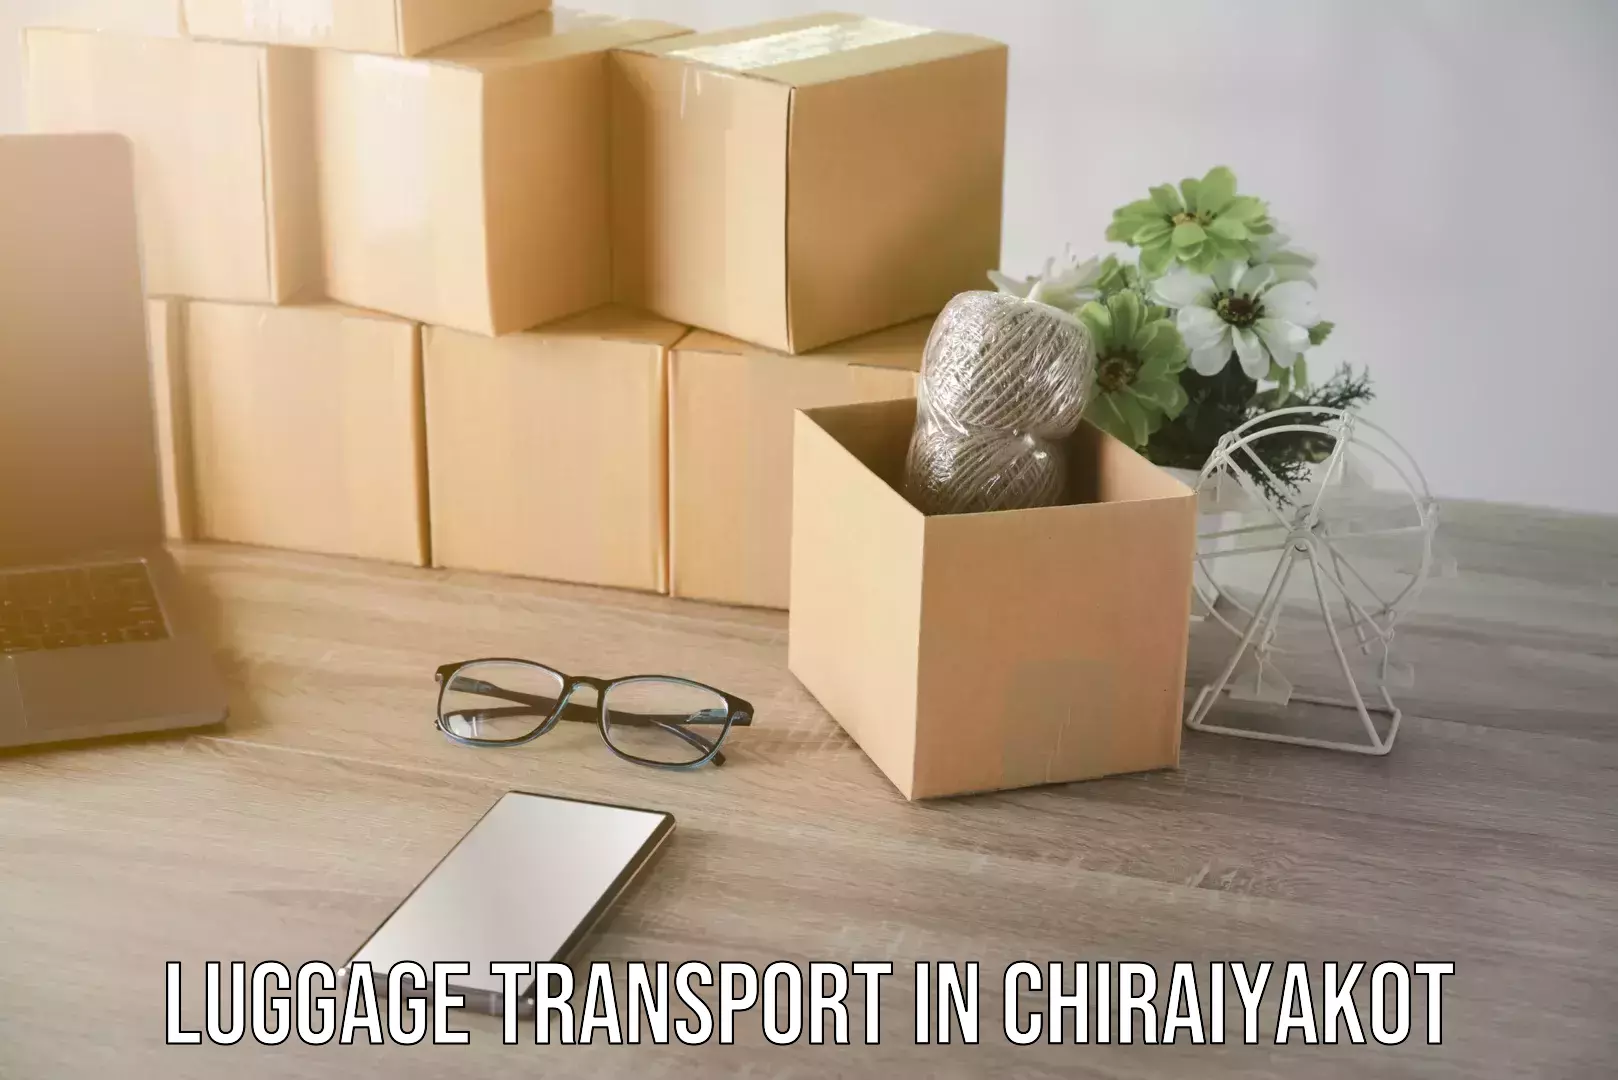 Baggage transport estimate in Chiraiyakot